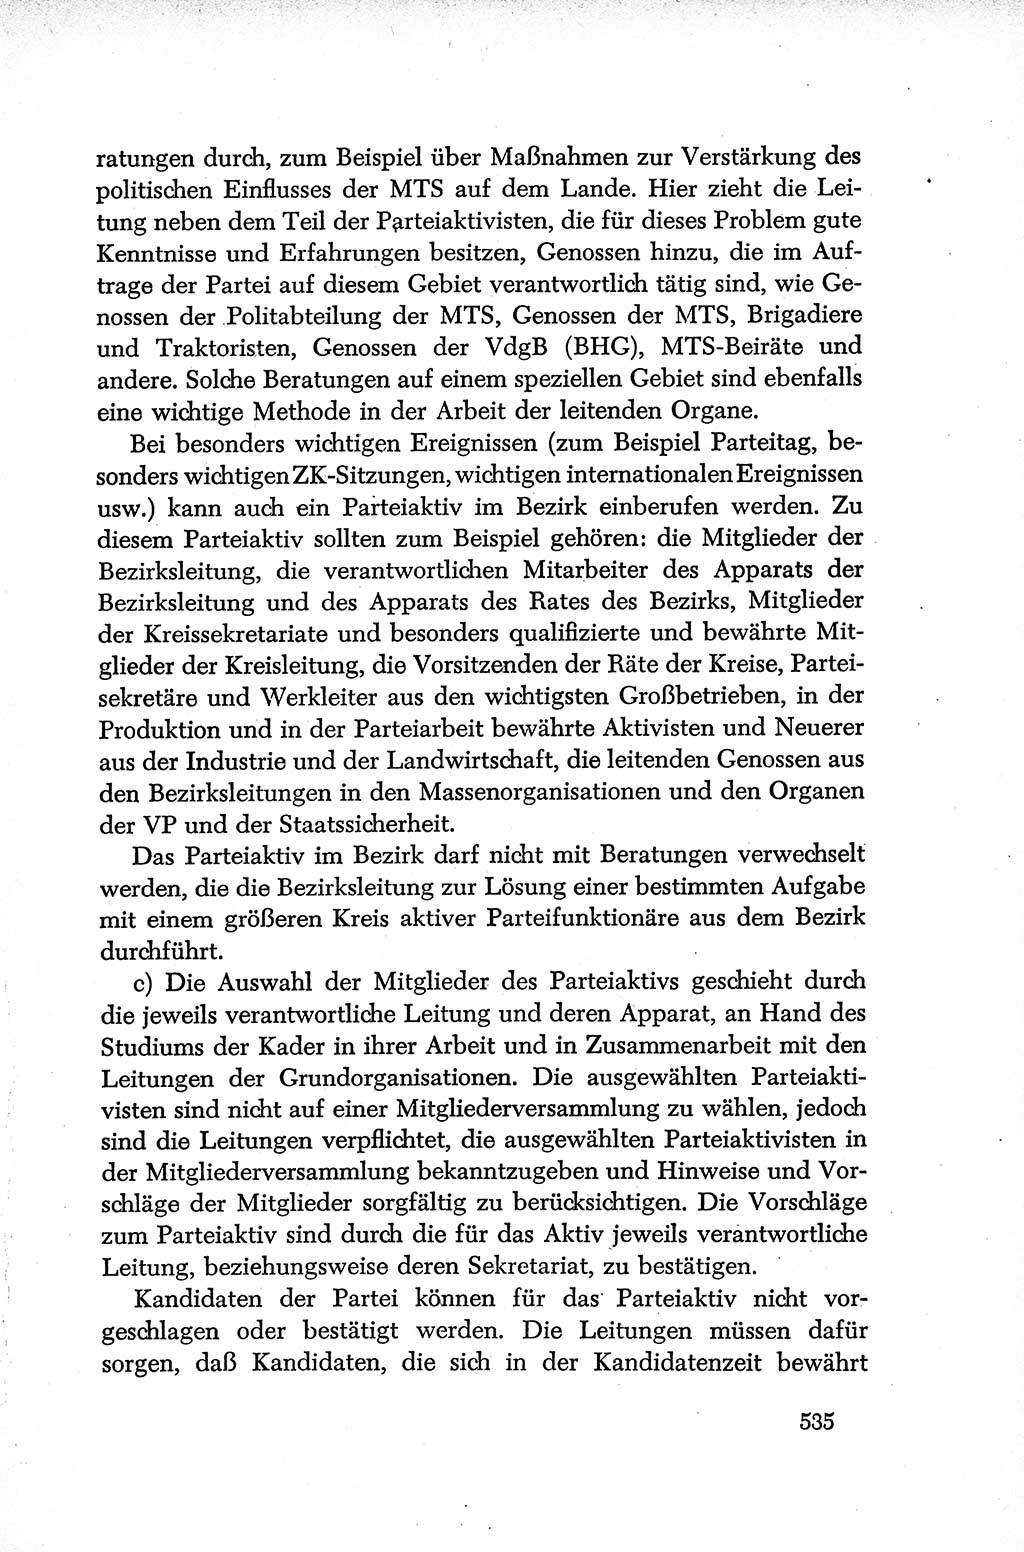 Dokumente der Sozialistischen Einheitspartei Deutschlands (SED) [Deutsche Demokratische Republik (DDR)] 1952-1953, Seite 535 (Dok. SED DDR 1952-1953, S. 535)